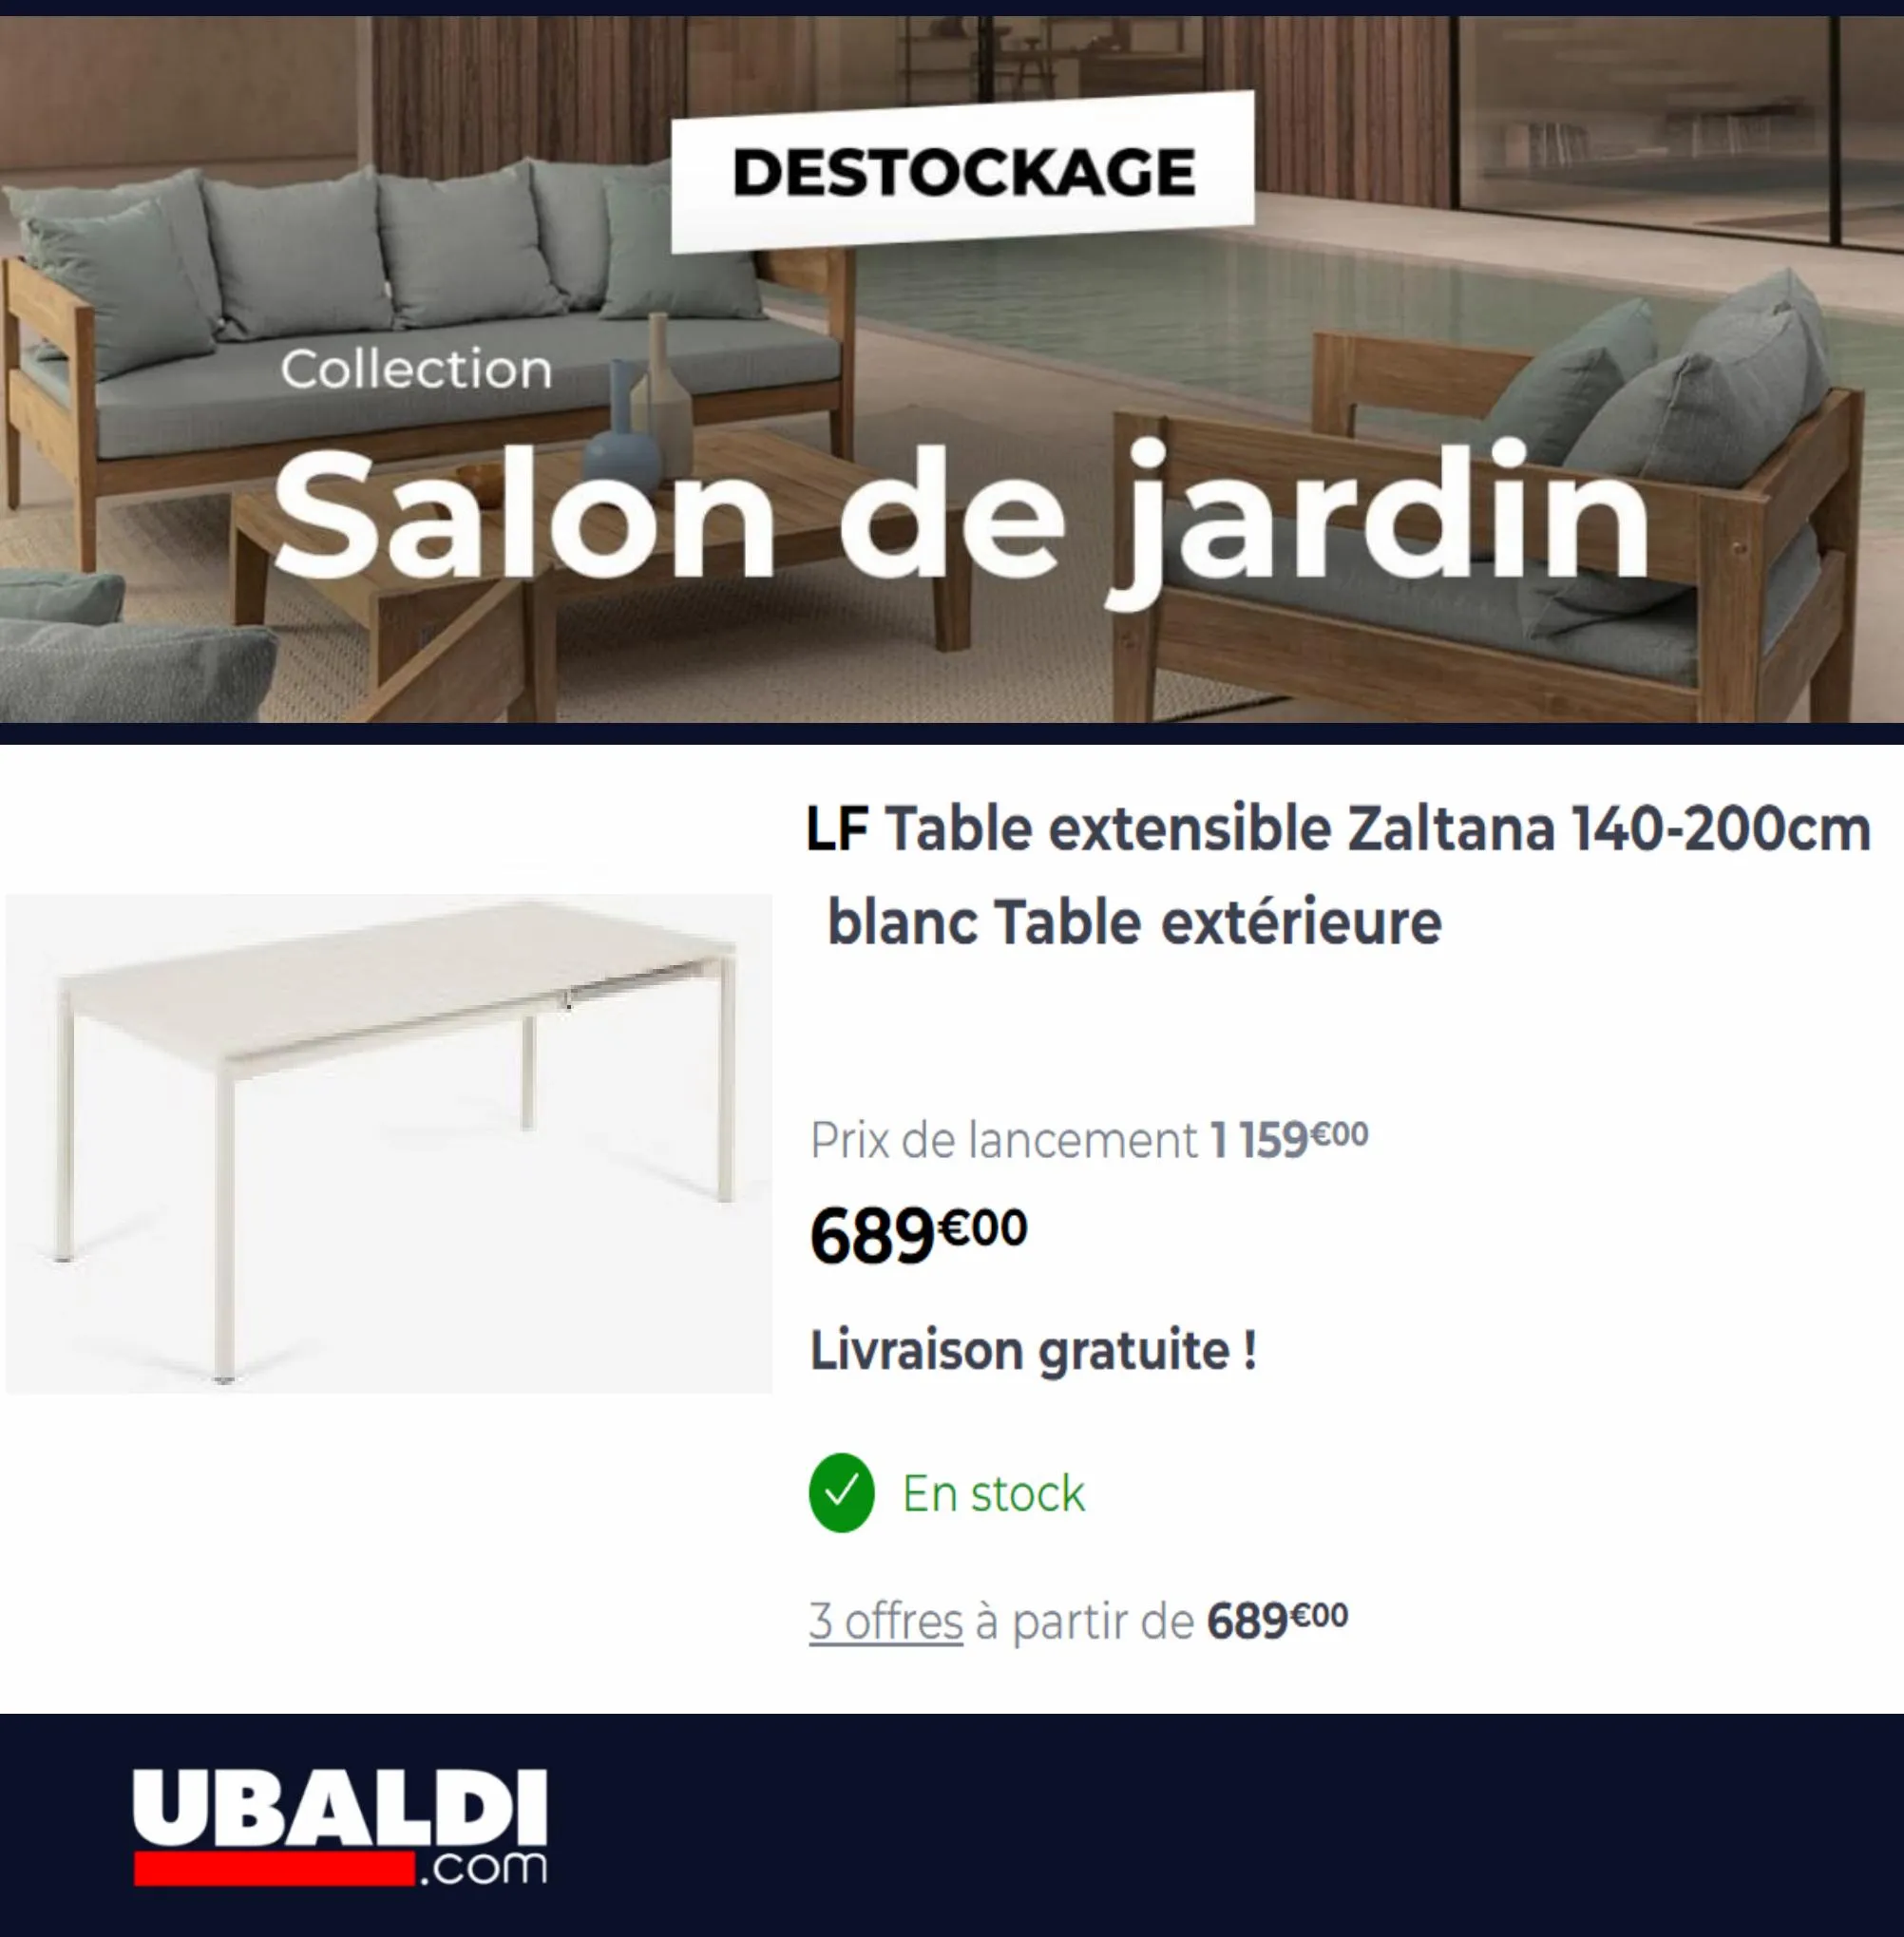 Catalogue Destockage Salon de Jardin, page 00004